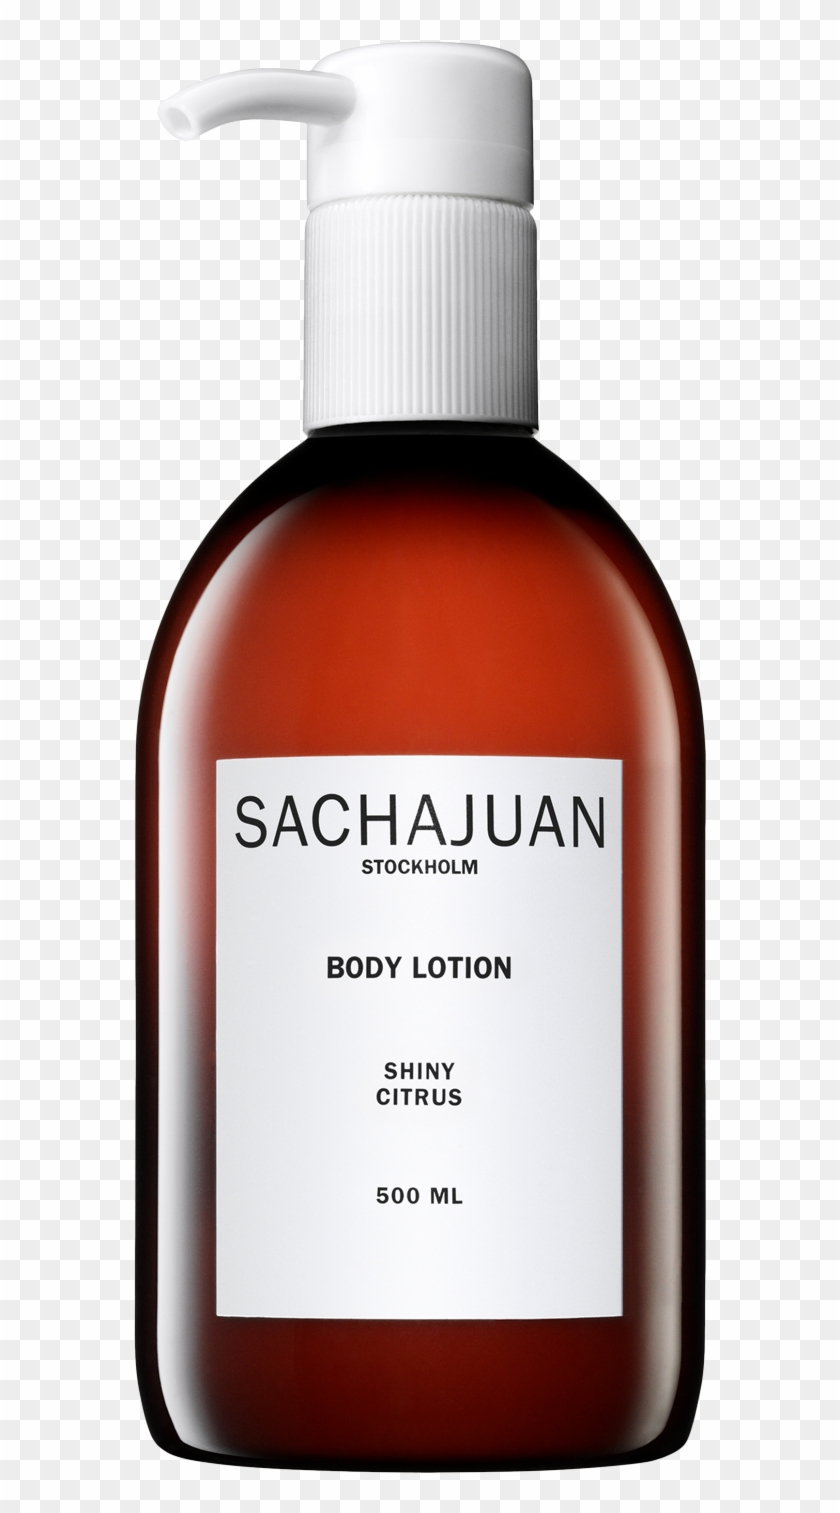 Body Lotion Shiny Citrus - Sacha Juan Body Lotion Clipart #1533396